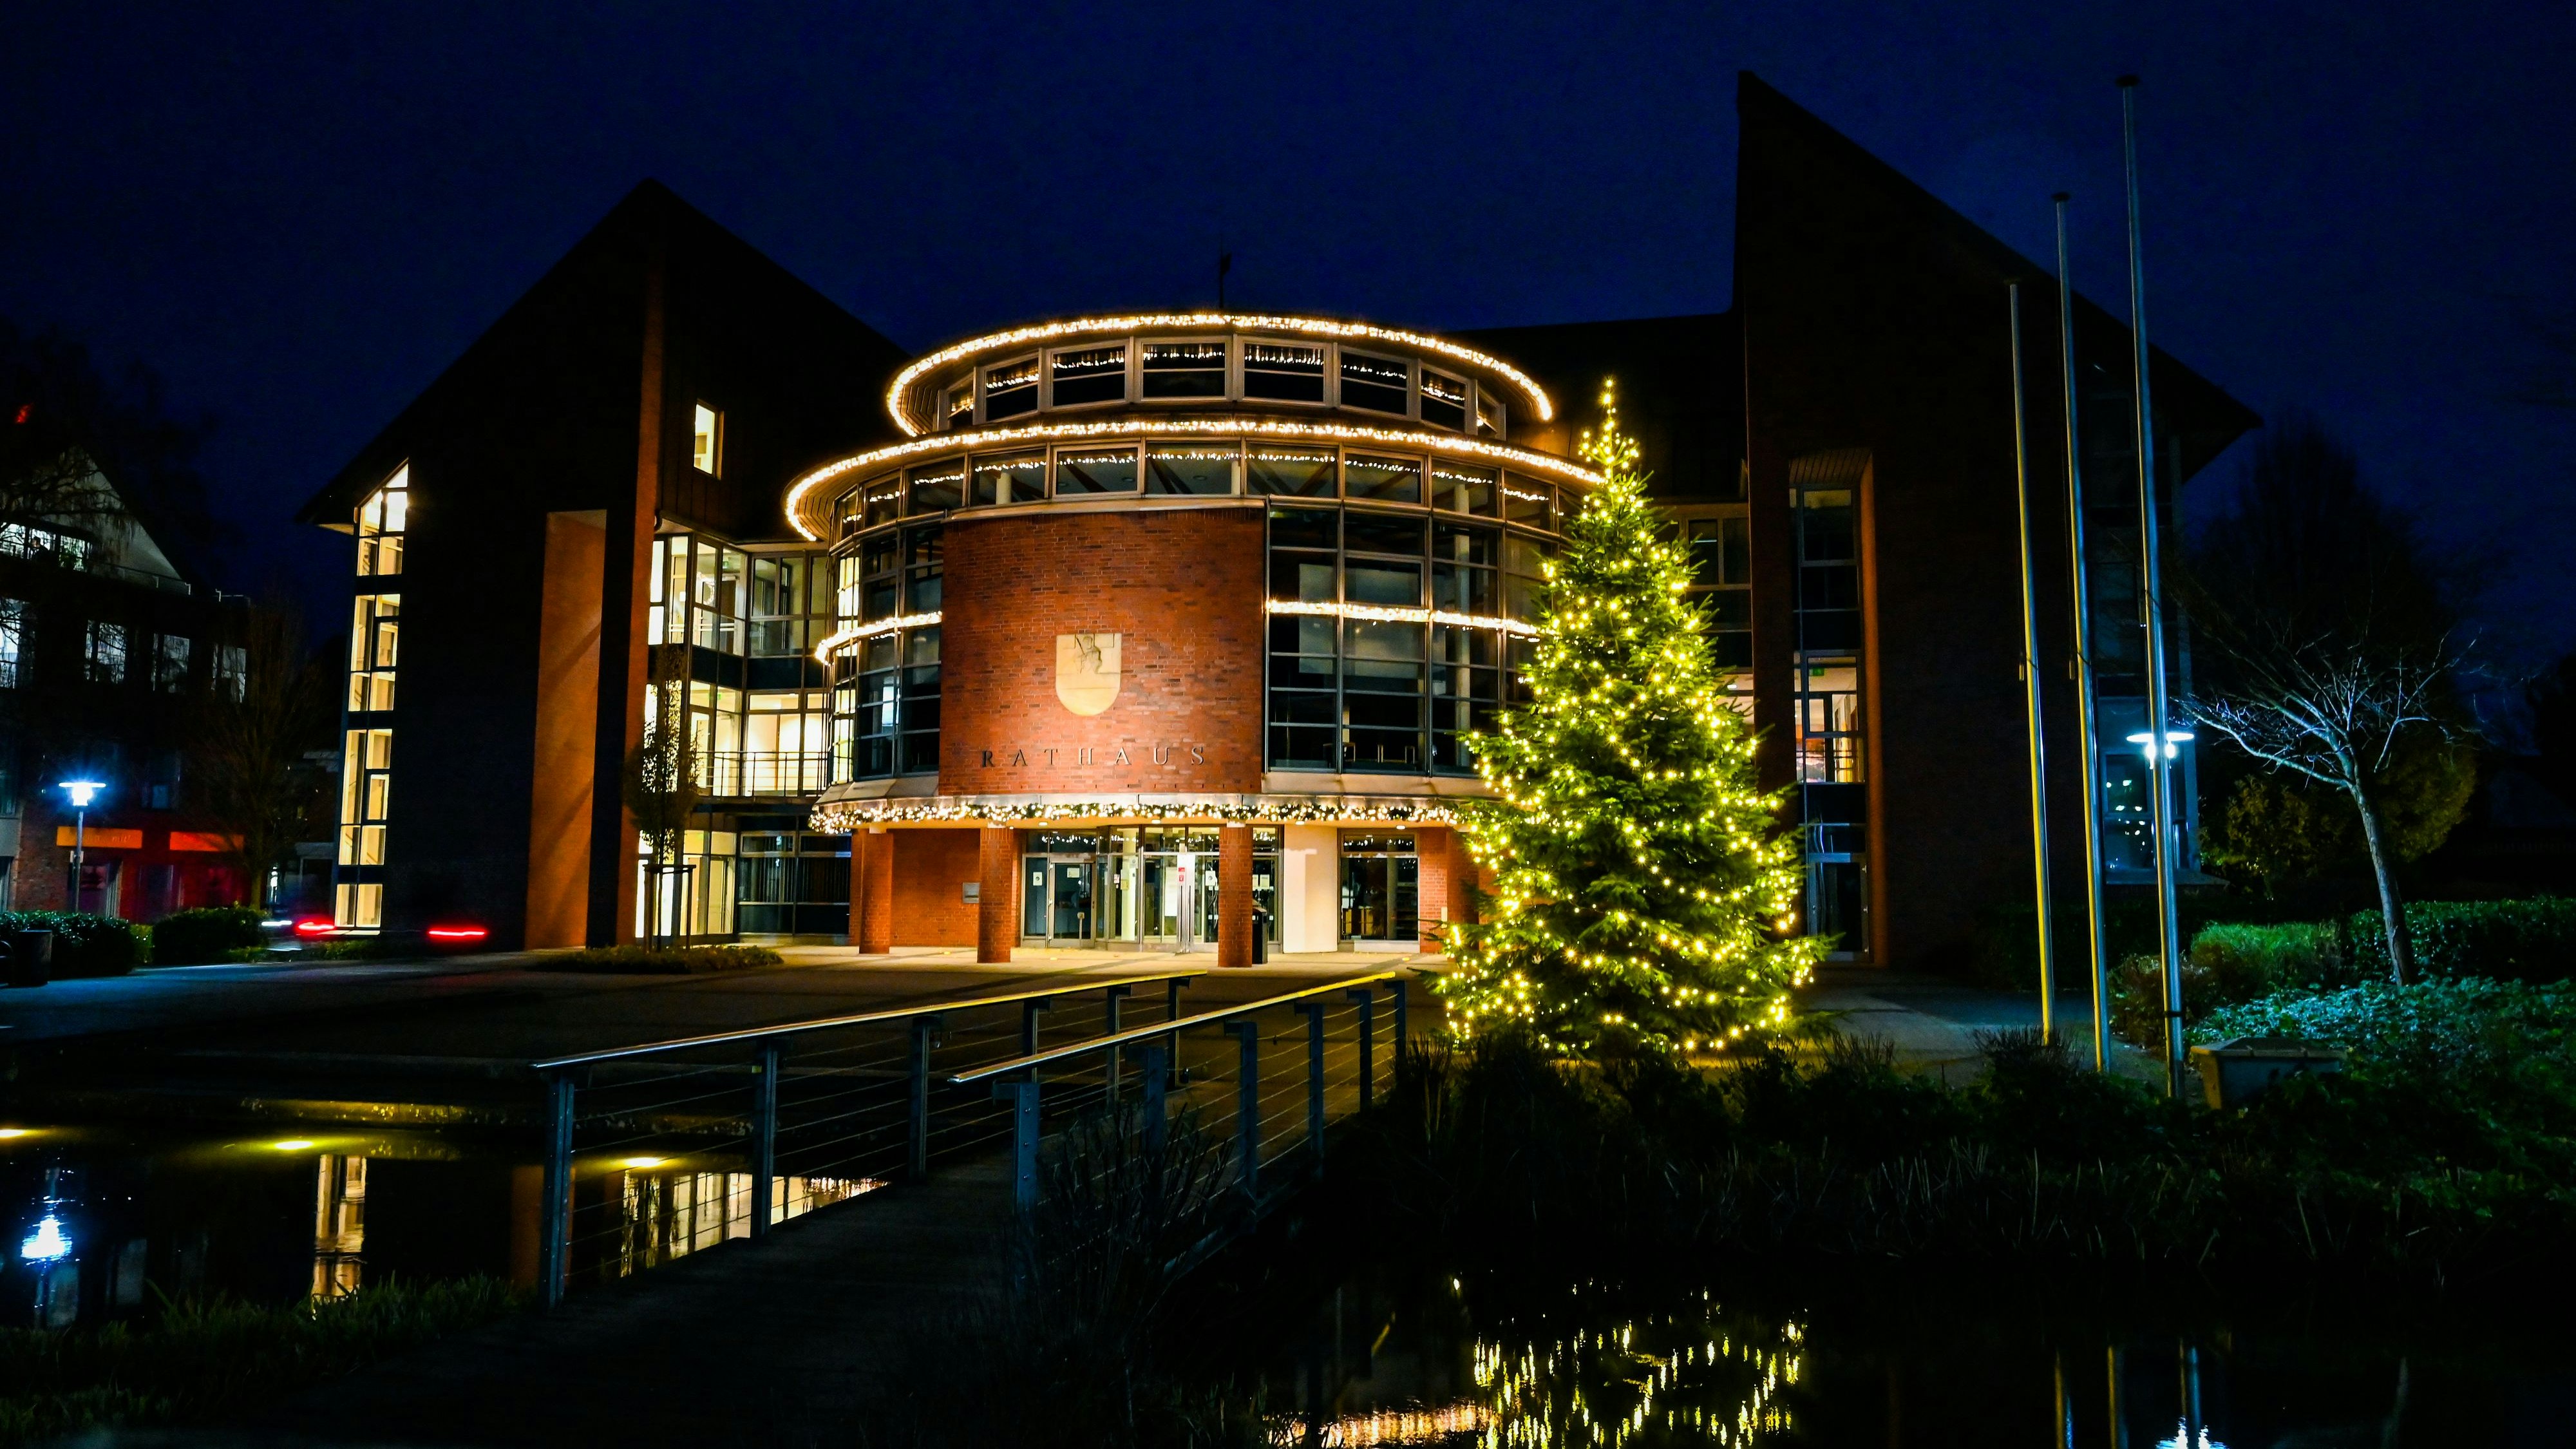 Leuchtet auch in diesem Jahr: Der große Weihnachtsbaum vor dem Rathaus. Archivfoto: Hermes